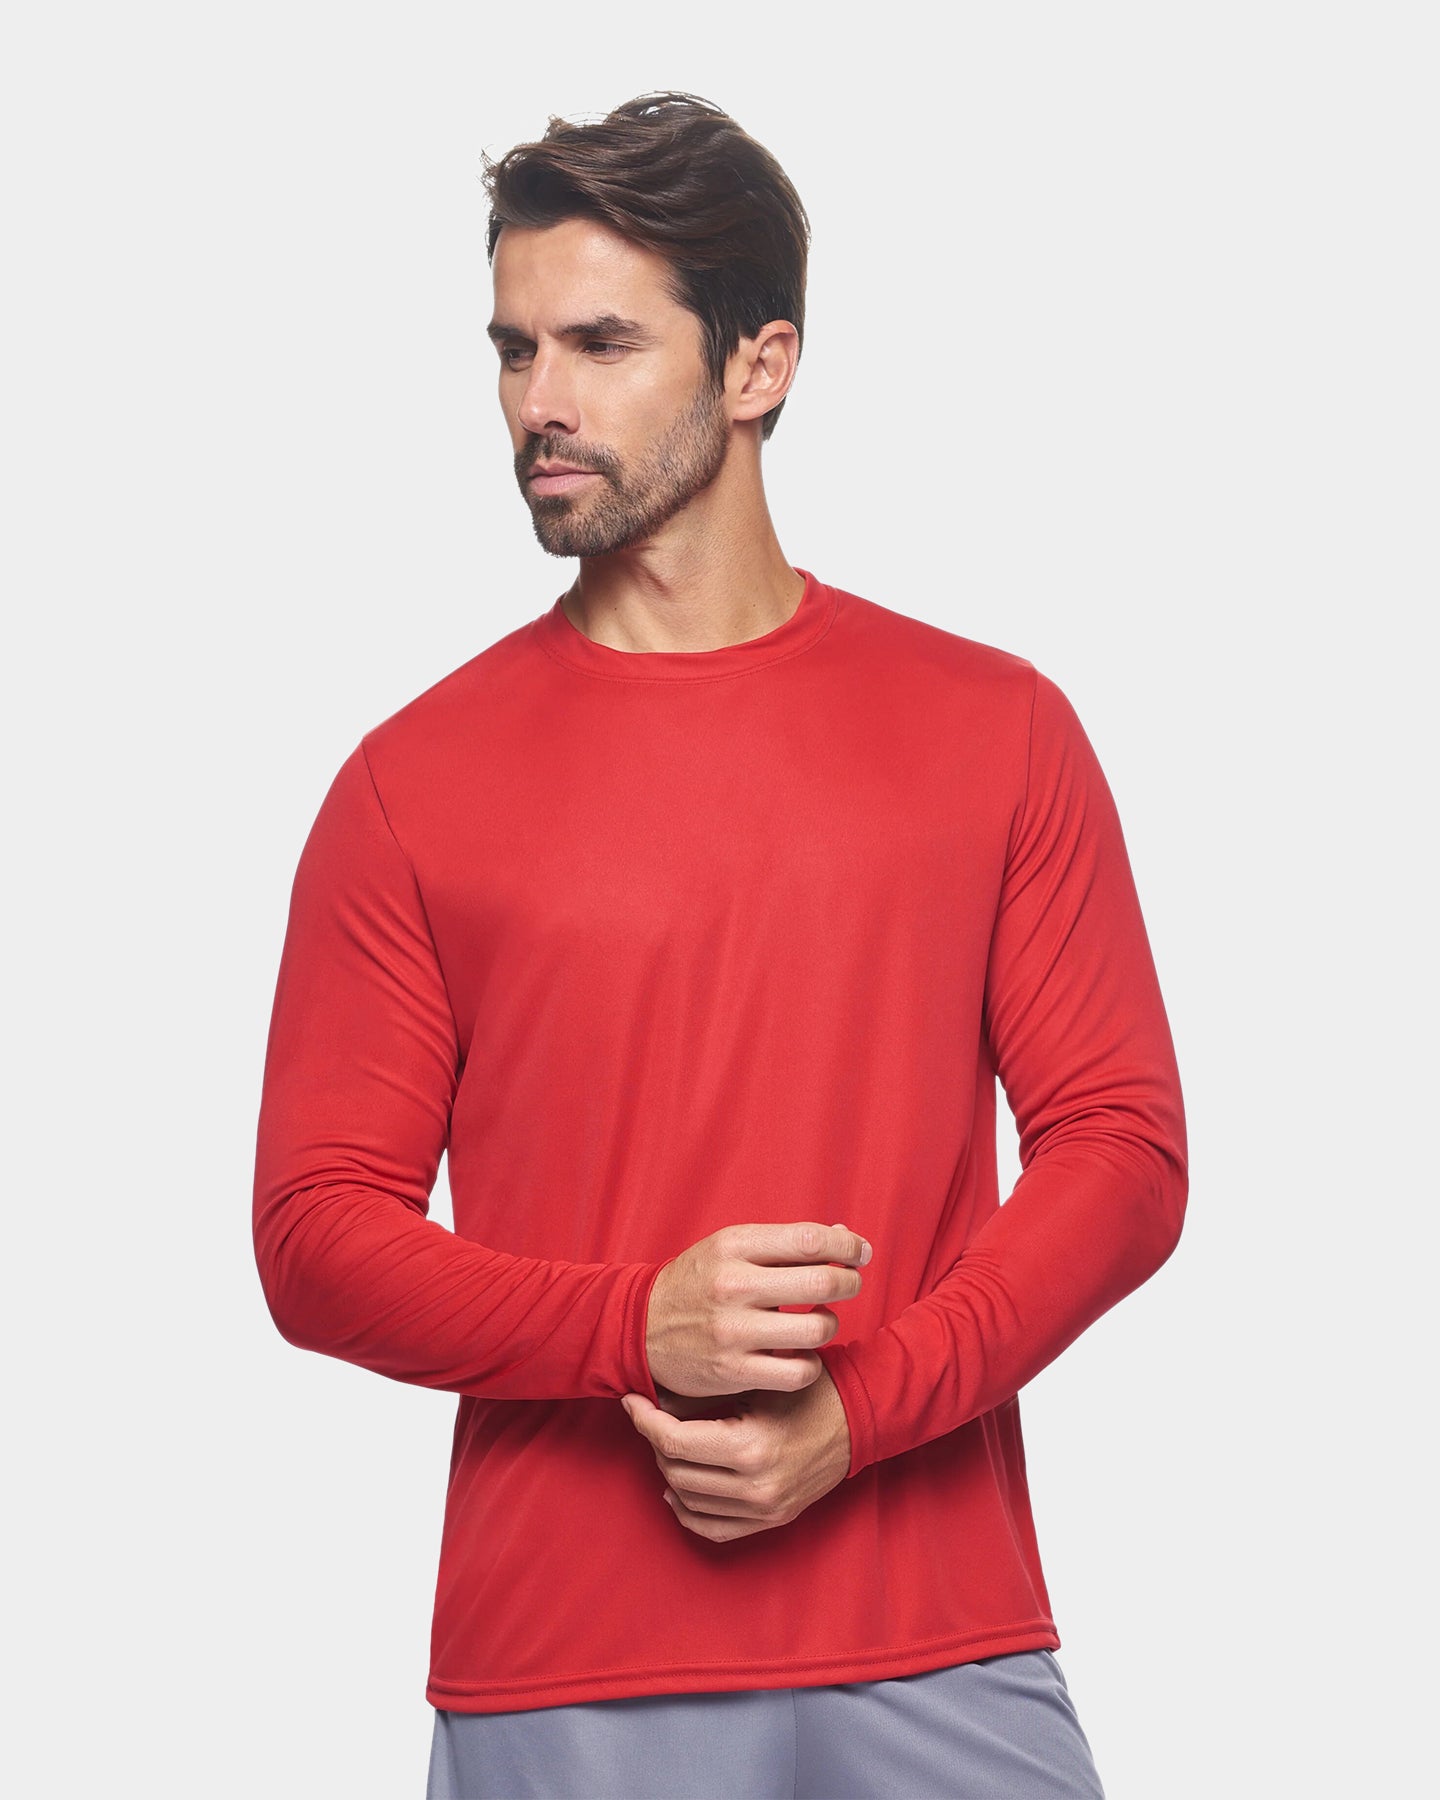 Expert Brand DriMax Men's Performance Long Sleeve Shirt, 2XL, Red A1